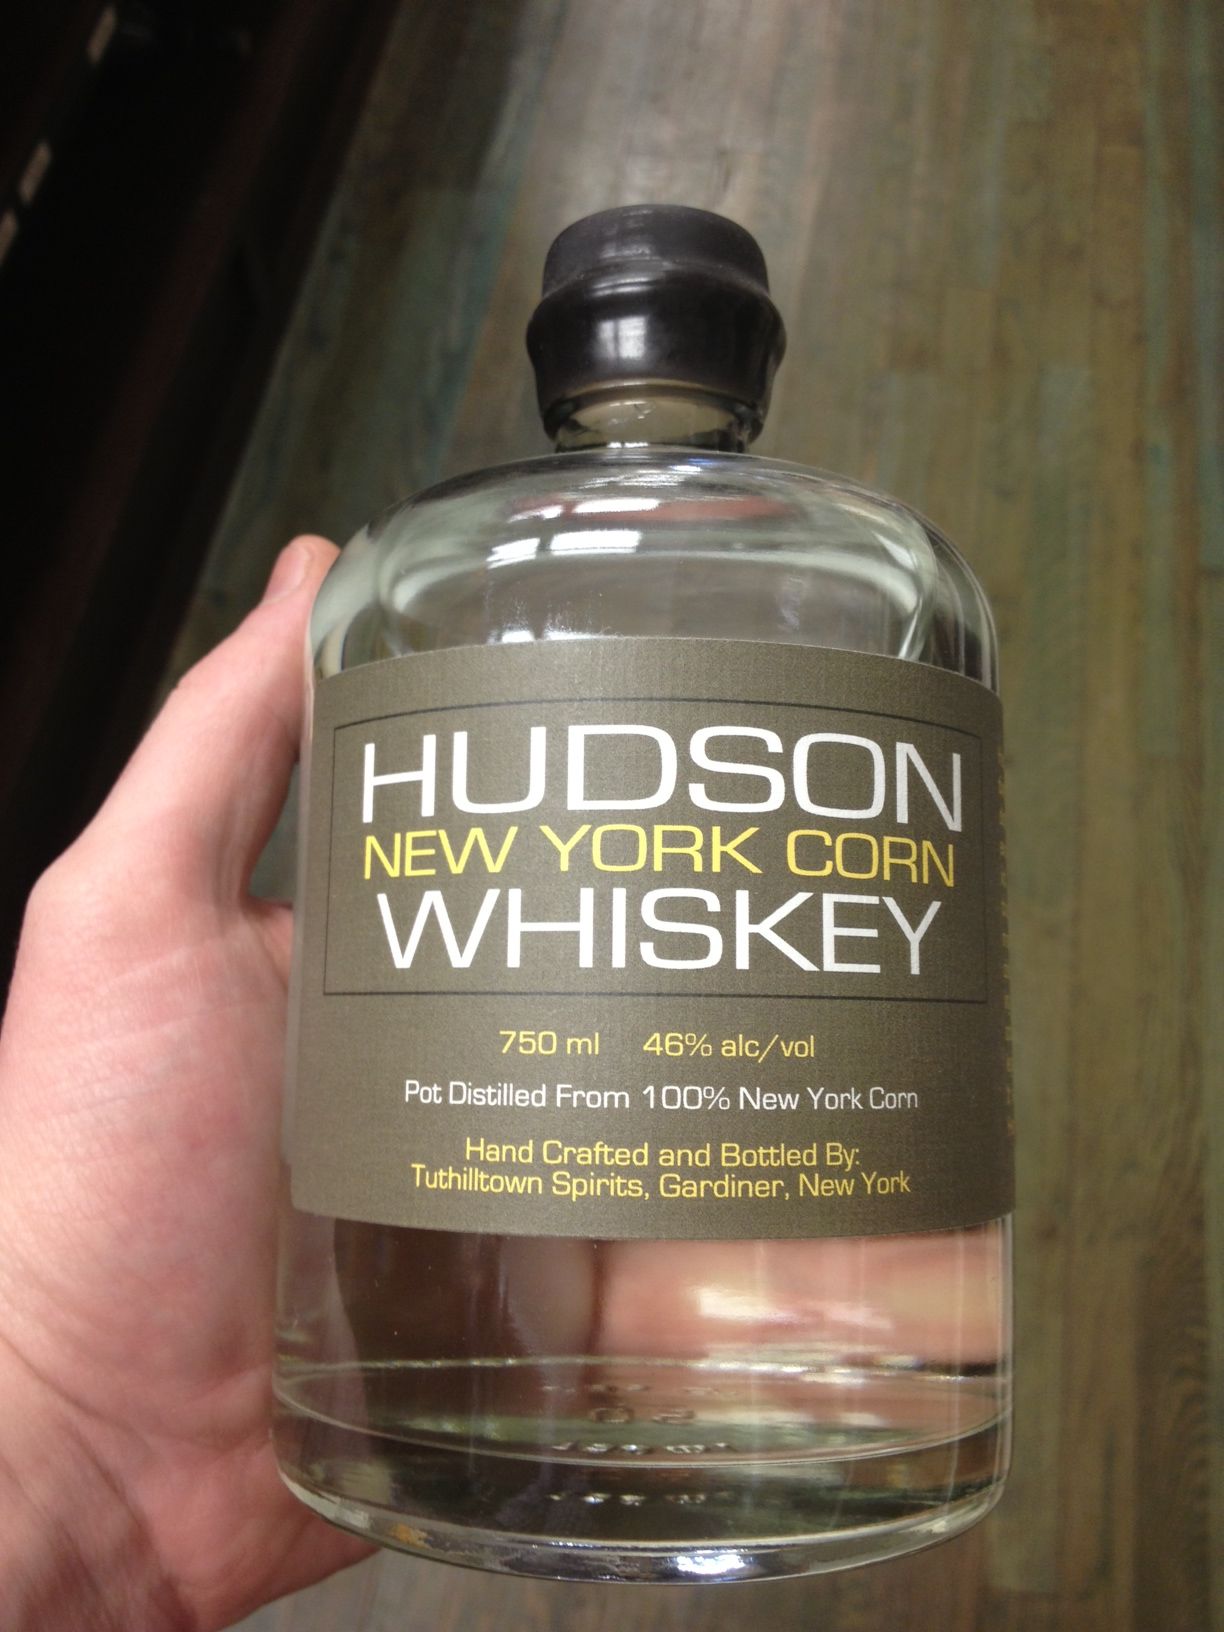 Hudson NY Corn Whiskey $54.99